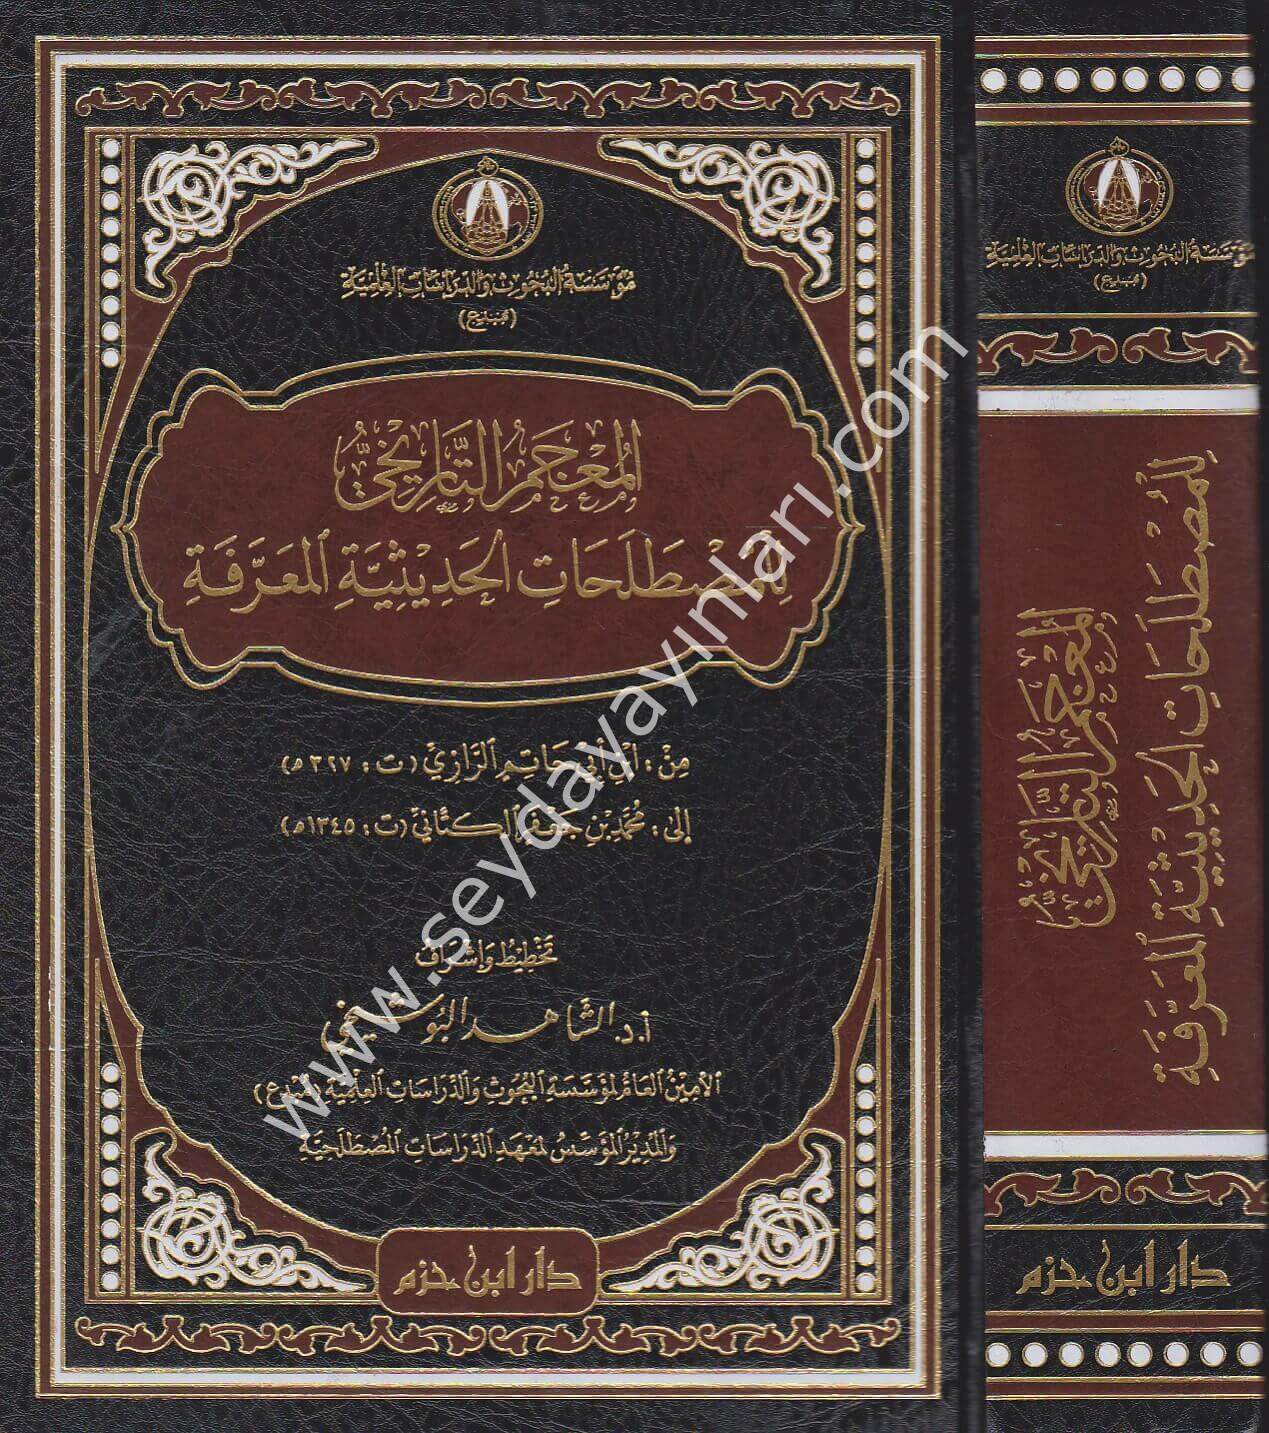 El Mucemut Tarihi lil Mustalahatin Nakdiyye El Muarrefe / المعجم التاريخي للمصطلحات الحديثية المعرفة